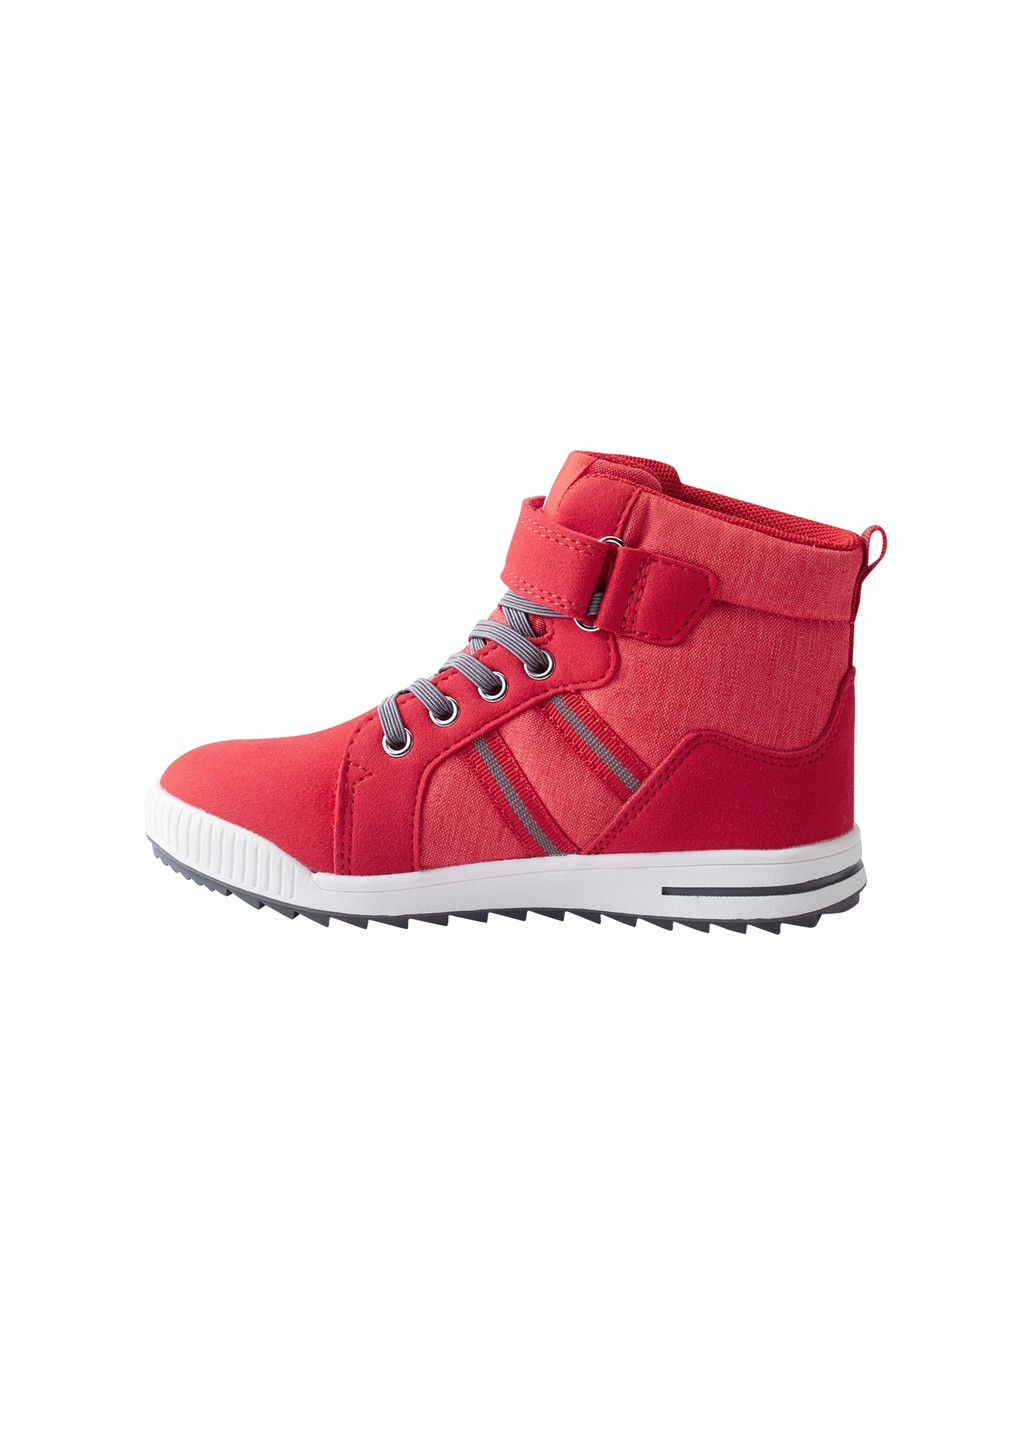 Красные осенние ботинки на шнурках Reima